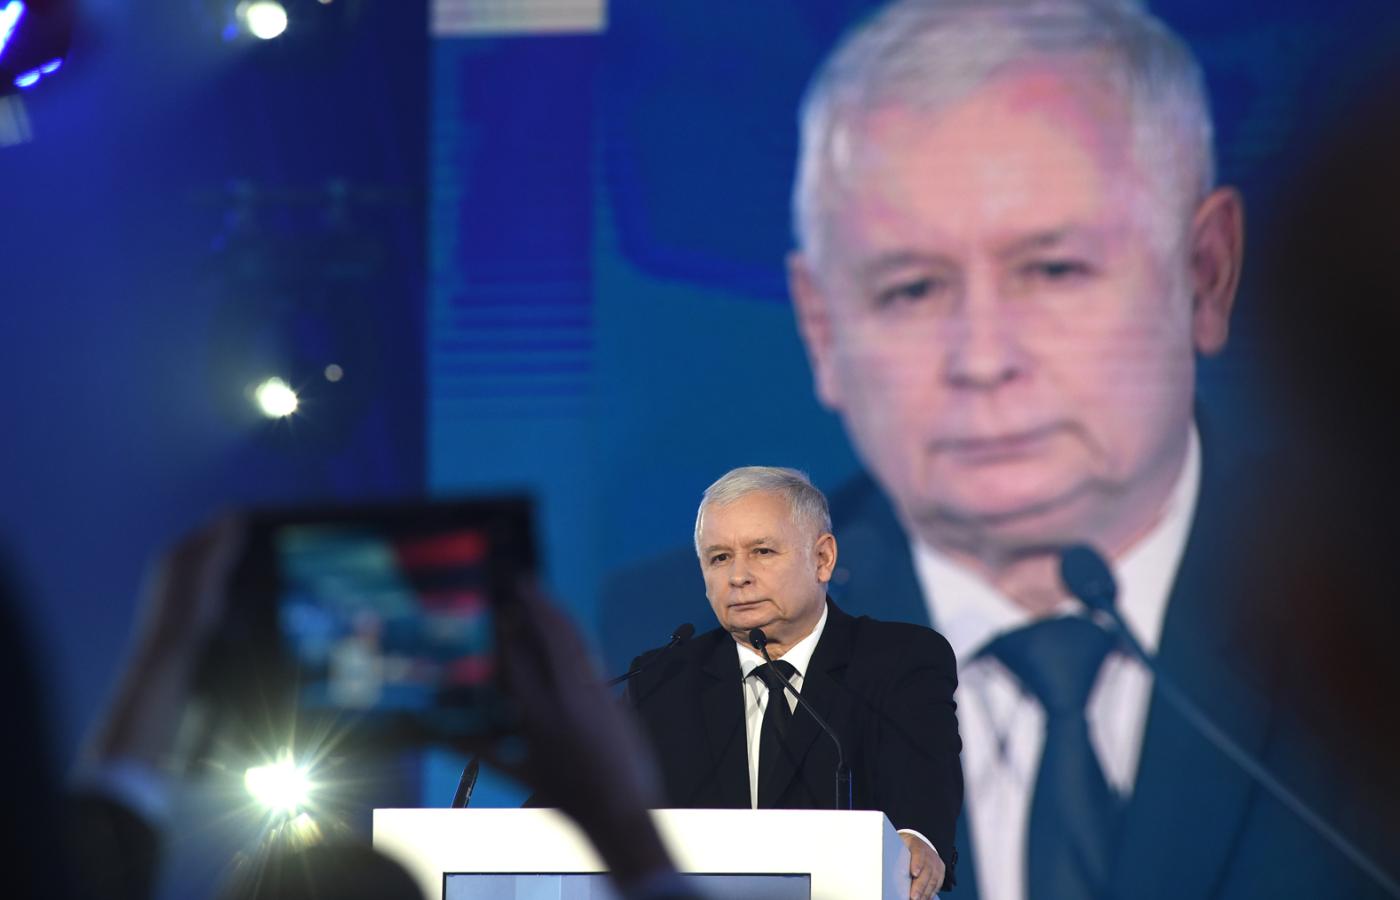 Kaczyńskiego interesuje czysta władza, zdecydowanie mniej zajmuje go gospodarka.